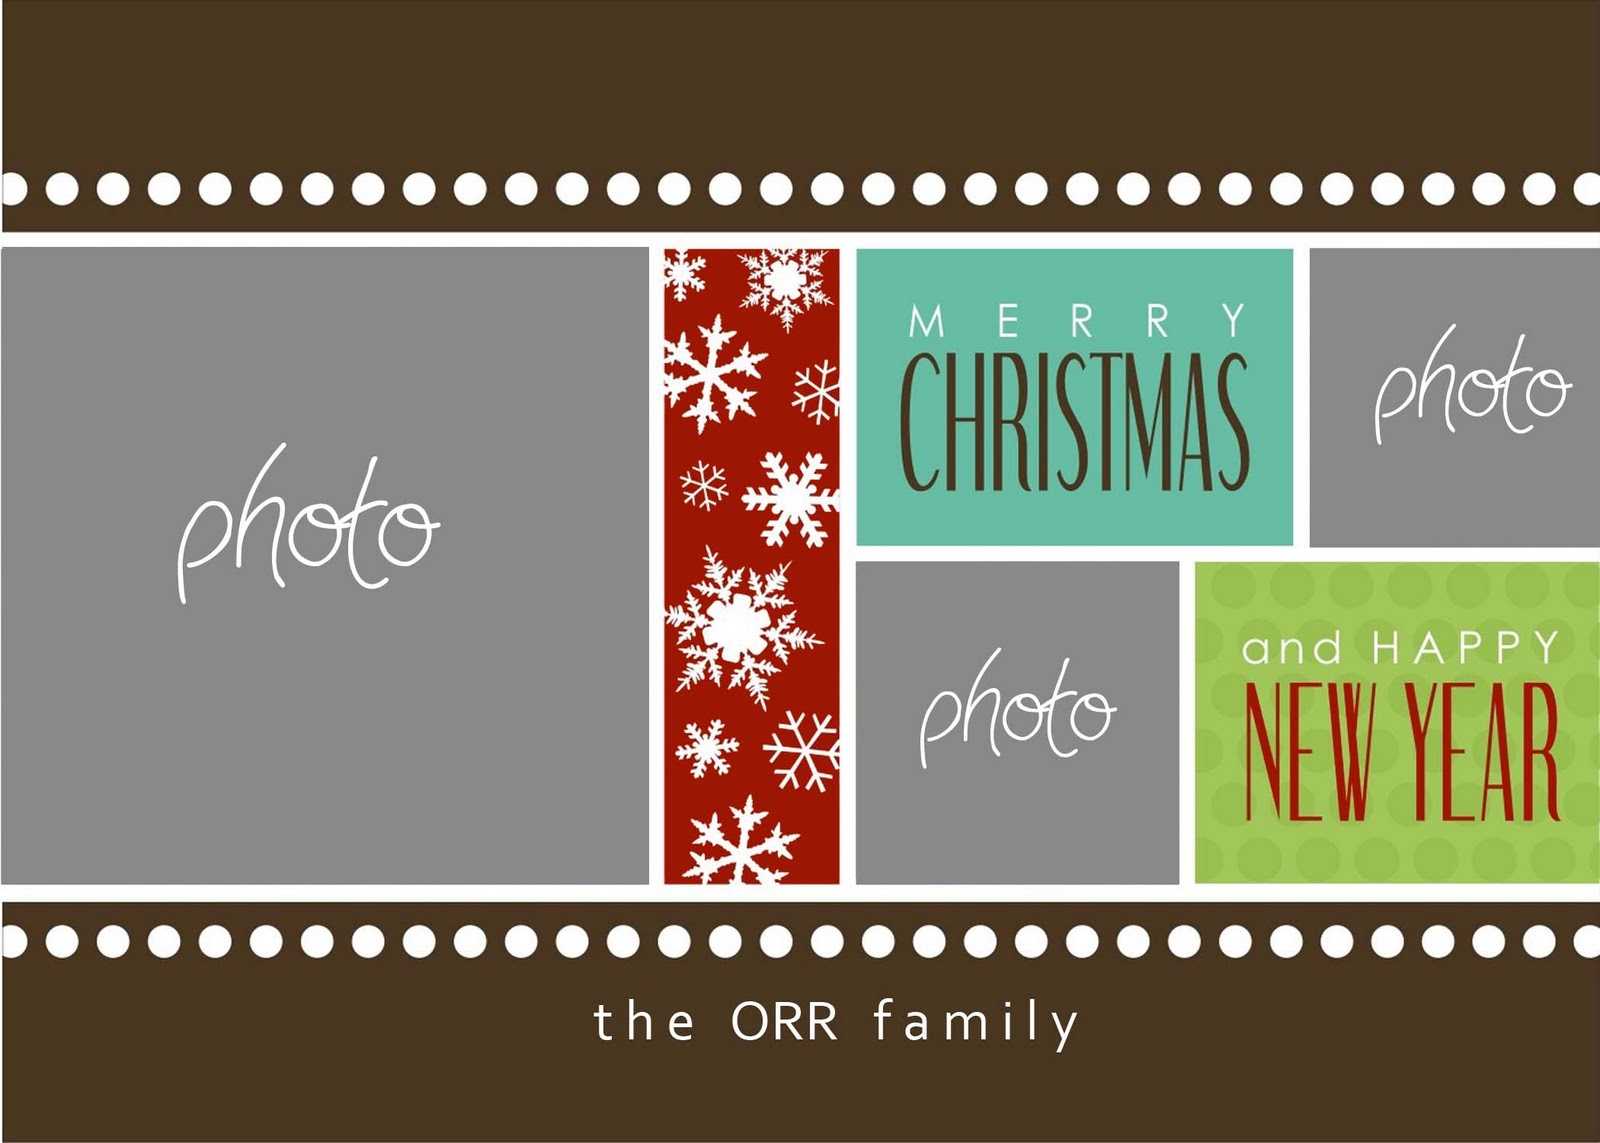 Christmas Cards Templates Photoshop ] - Christmas Card In Free Christmas Card Templates For Photoshop